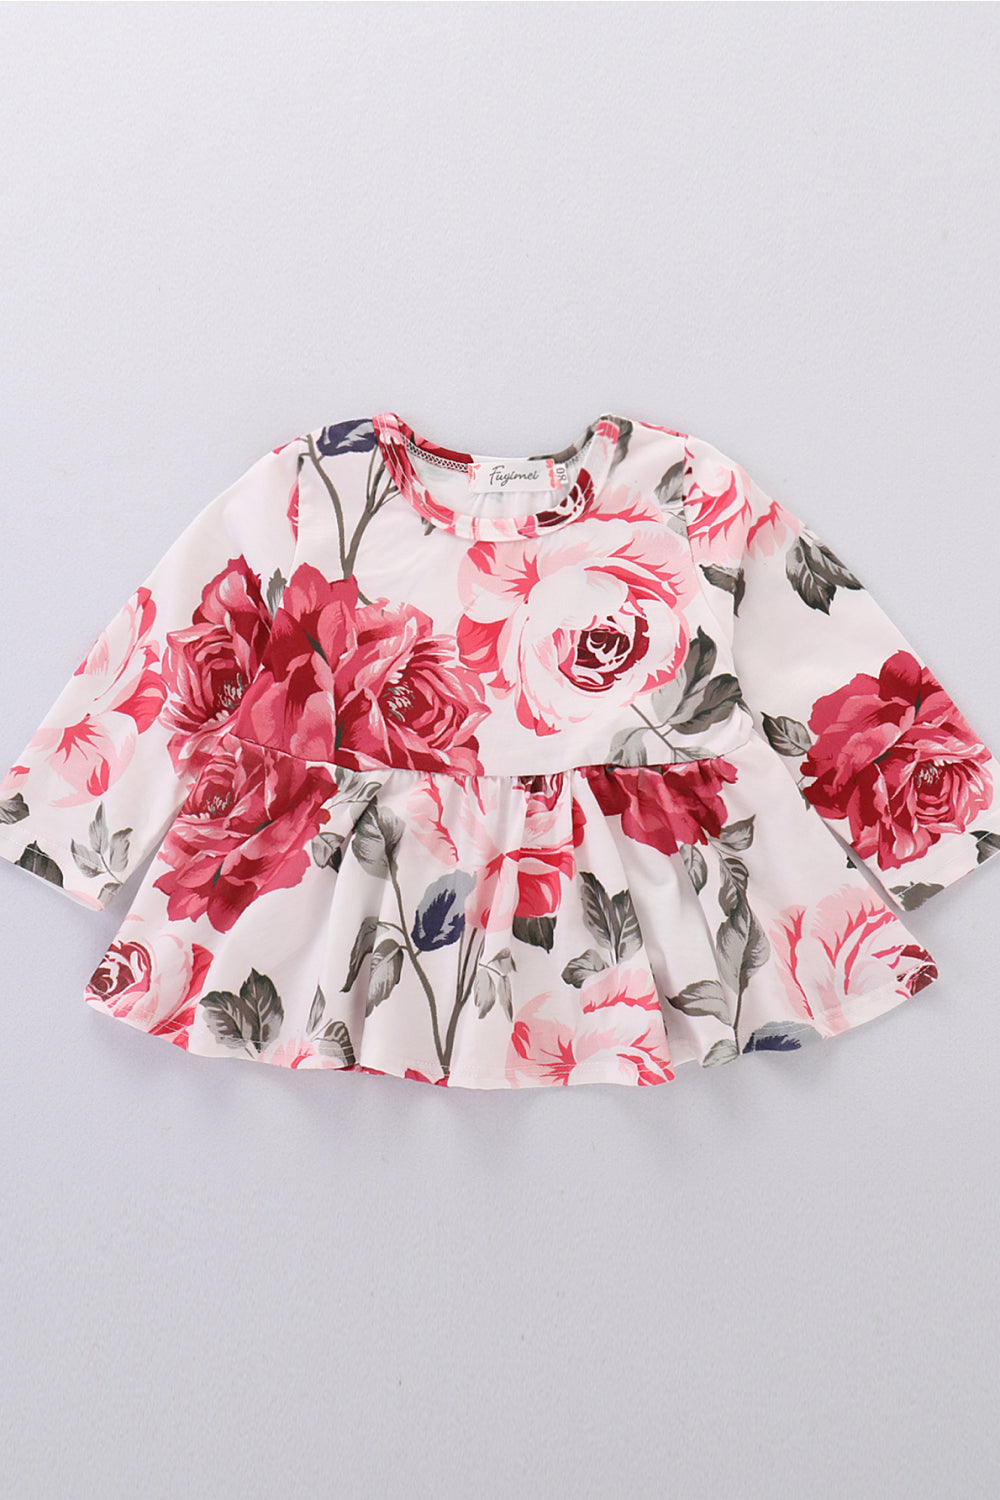 Girls Floral Babydoll Top and Jeans Set - DromedarShop.com Online Boutique